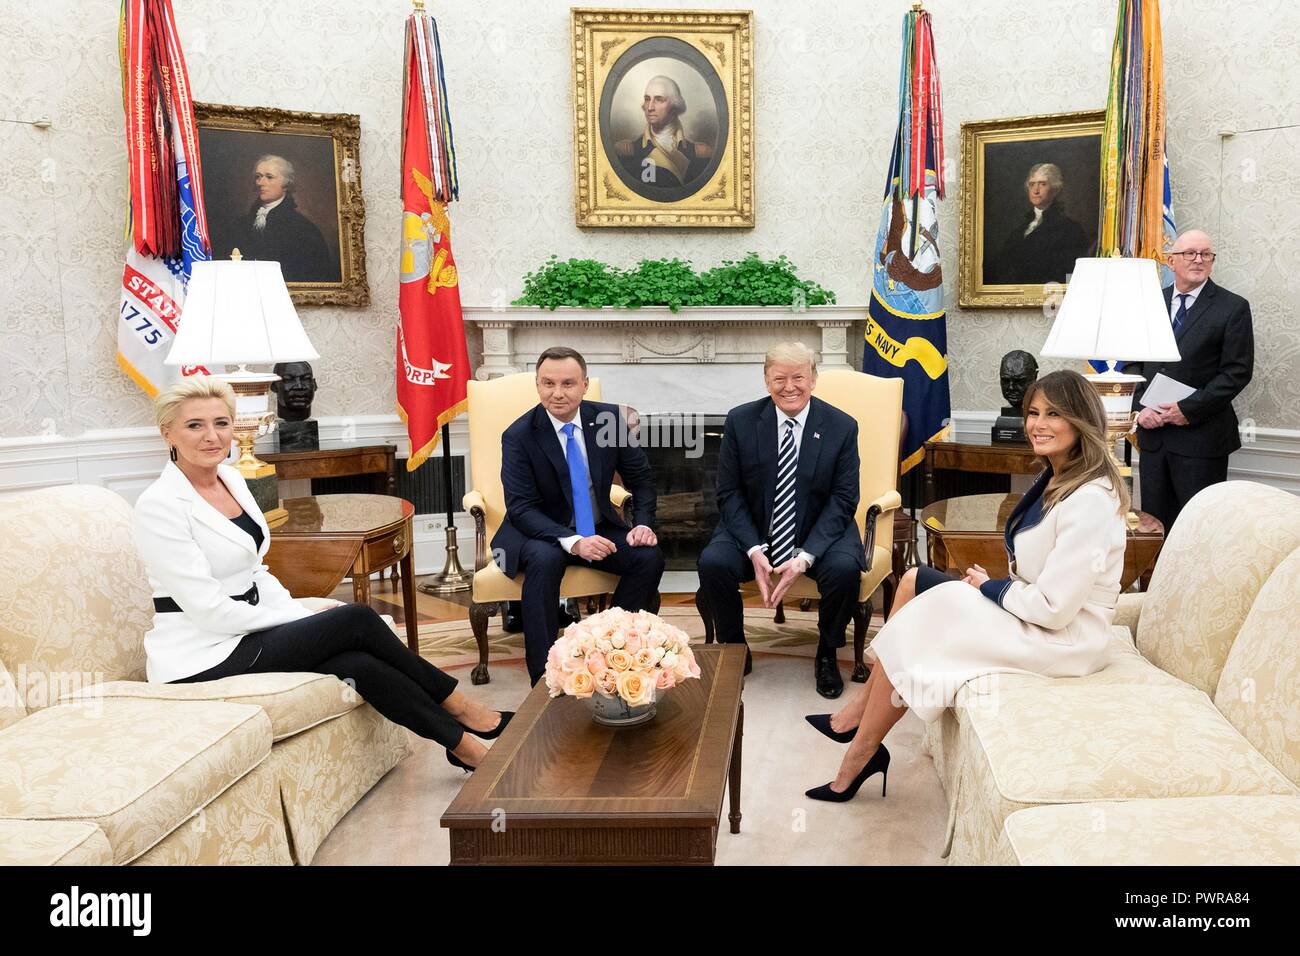 Président américain Donald Trump pose avec le président polonais Andrzej Duda en tant que première dame Melania Trump, droite, et Agata, Kornhauser-Duda à gauche, dans le cours d'une réunion bilatérale dans le bureau ovale de la Maison Blanche le 18 septembre 2018 à Washington, DC. Banque D'Images